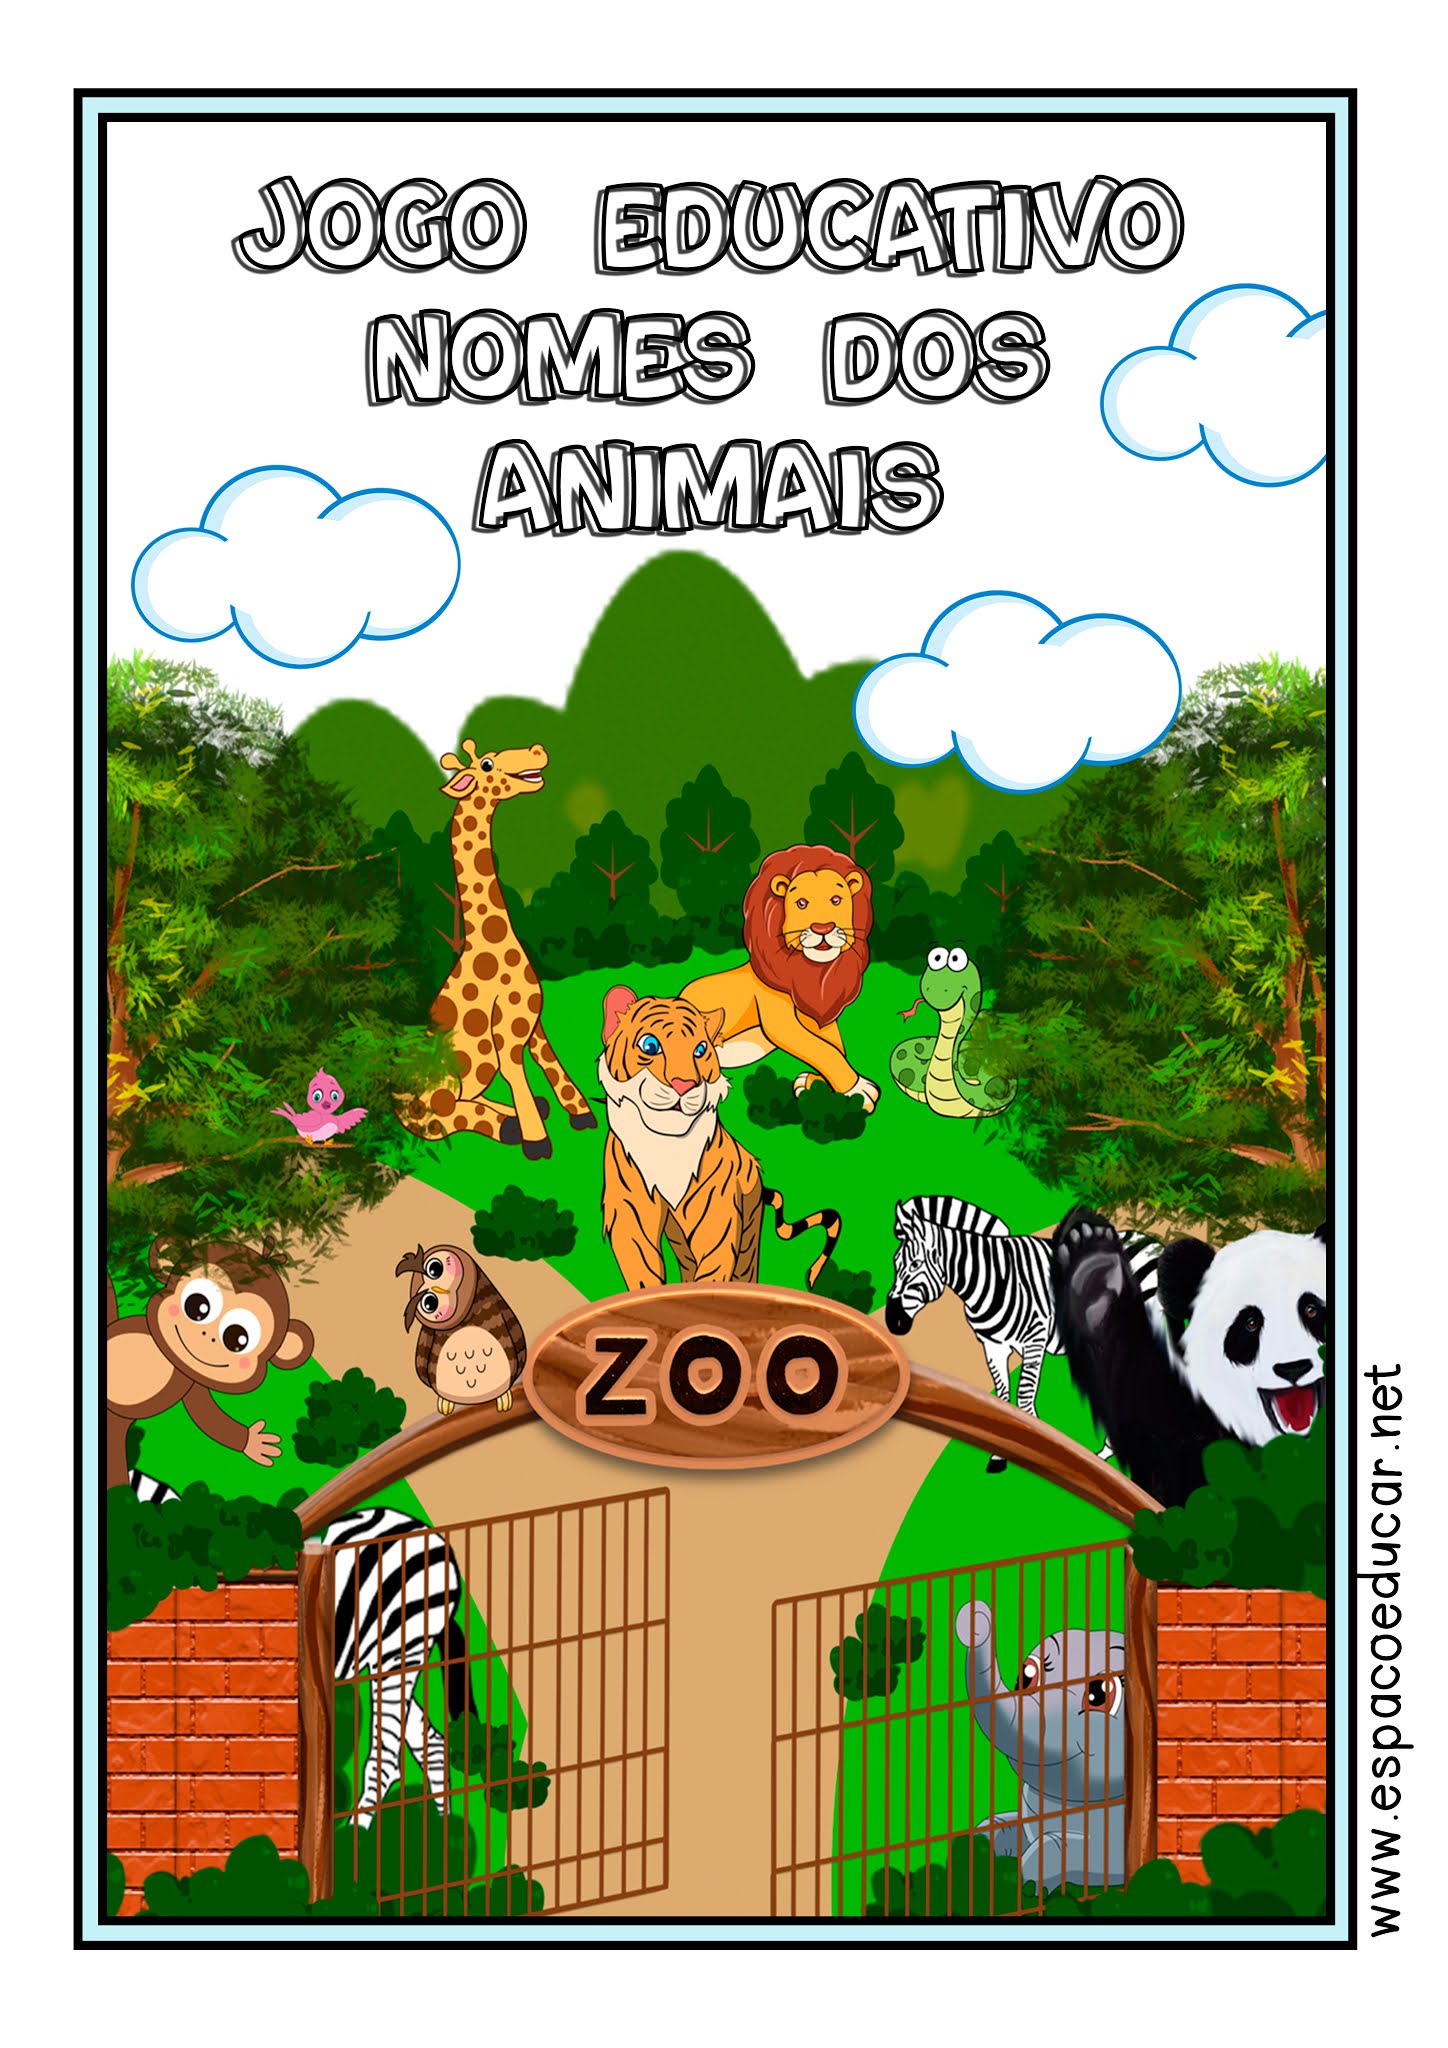 Jogo Alfabetização _ Quebra-cabeça _ PDF grátis #animalfabeto